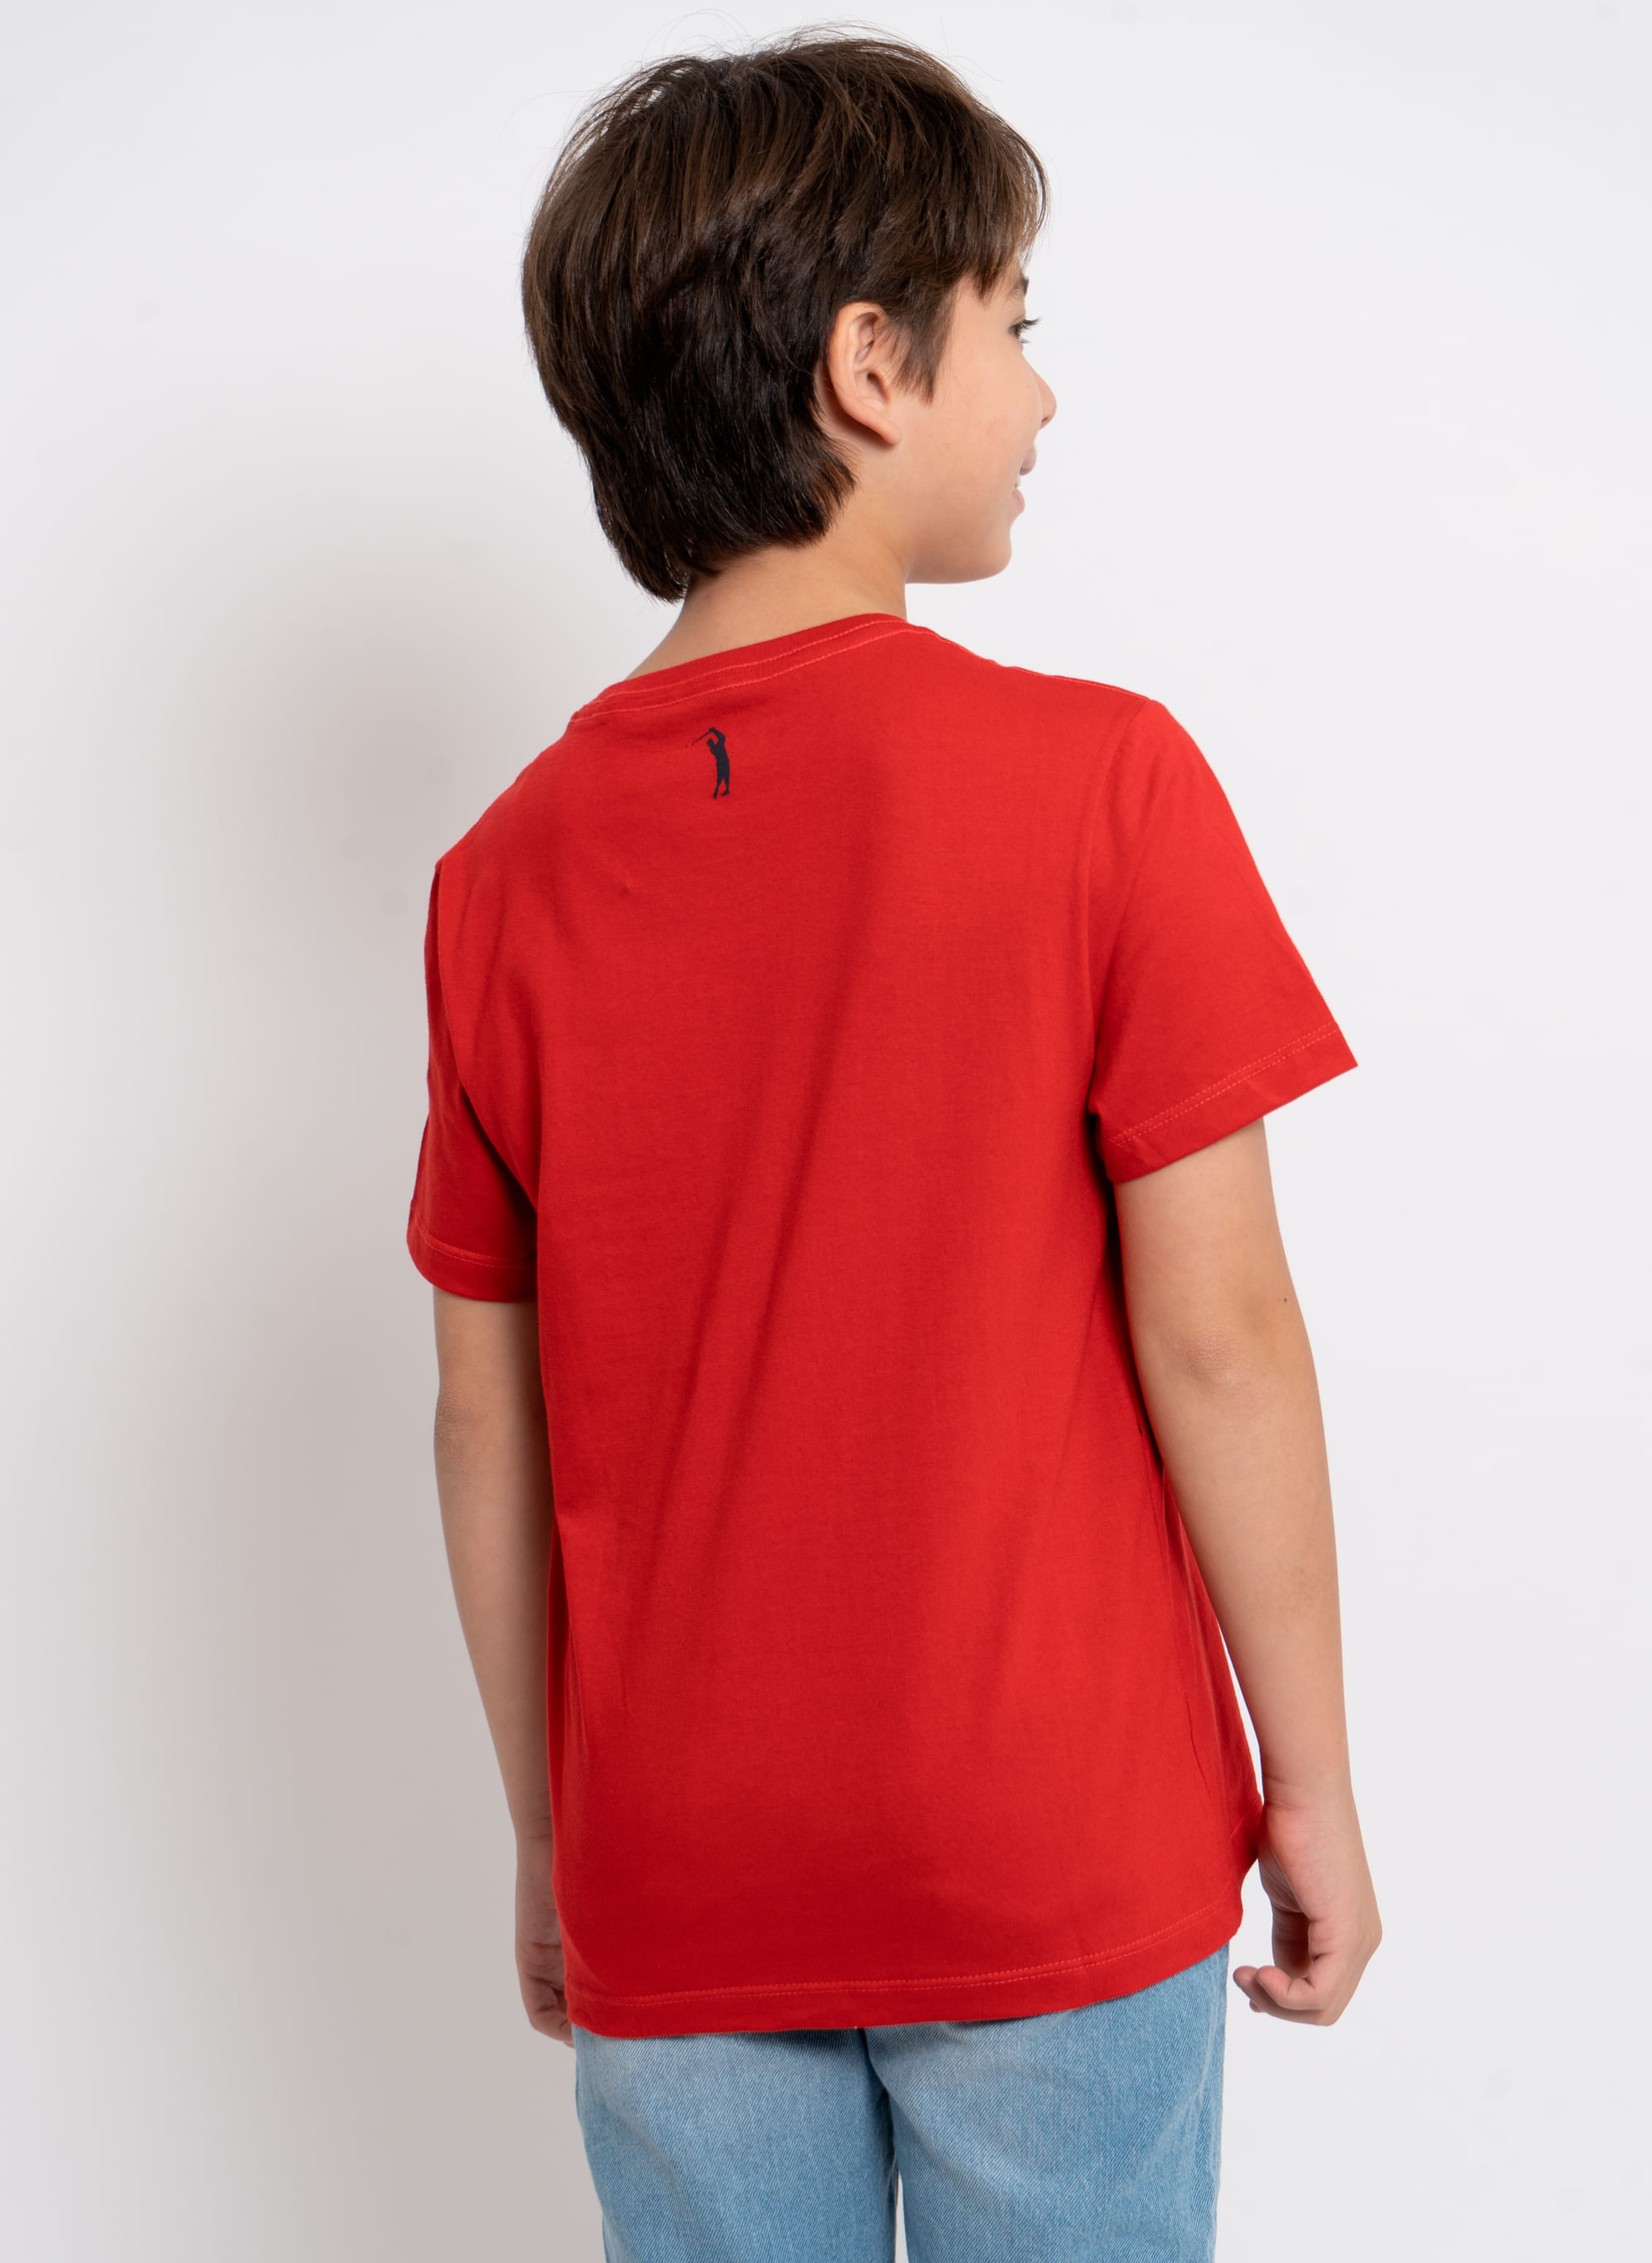 Camiseta-Aleatory-Kids-Estampada-Emboss-Vermelha-Vermelho-2